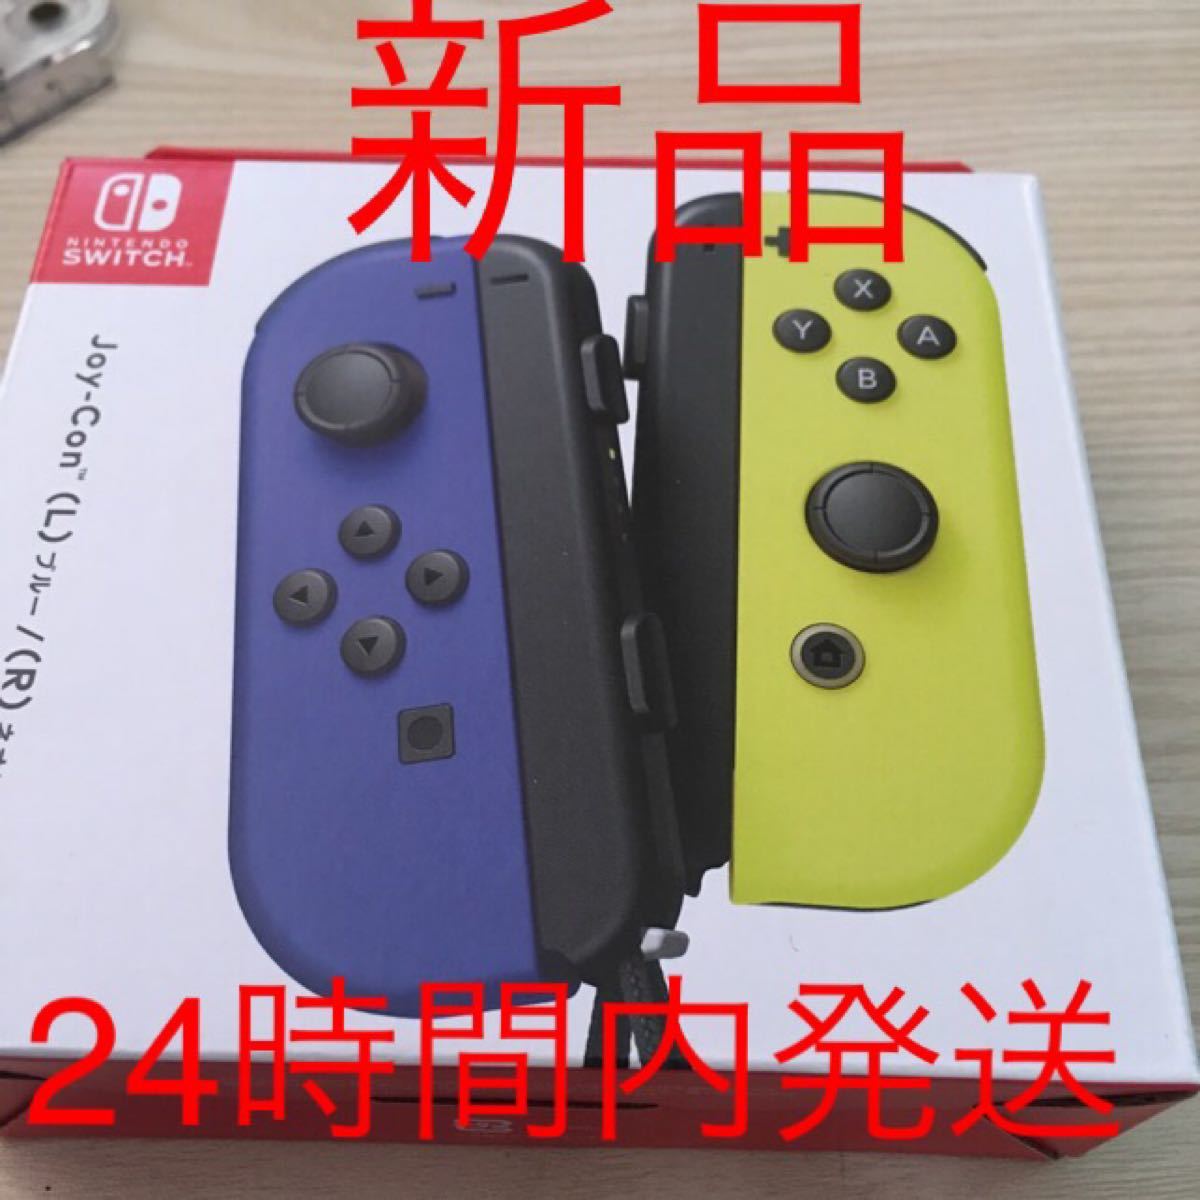  Switch joy-con  (L)ブルー (R)ネオンイエロー 新品未使用